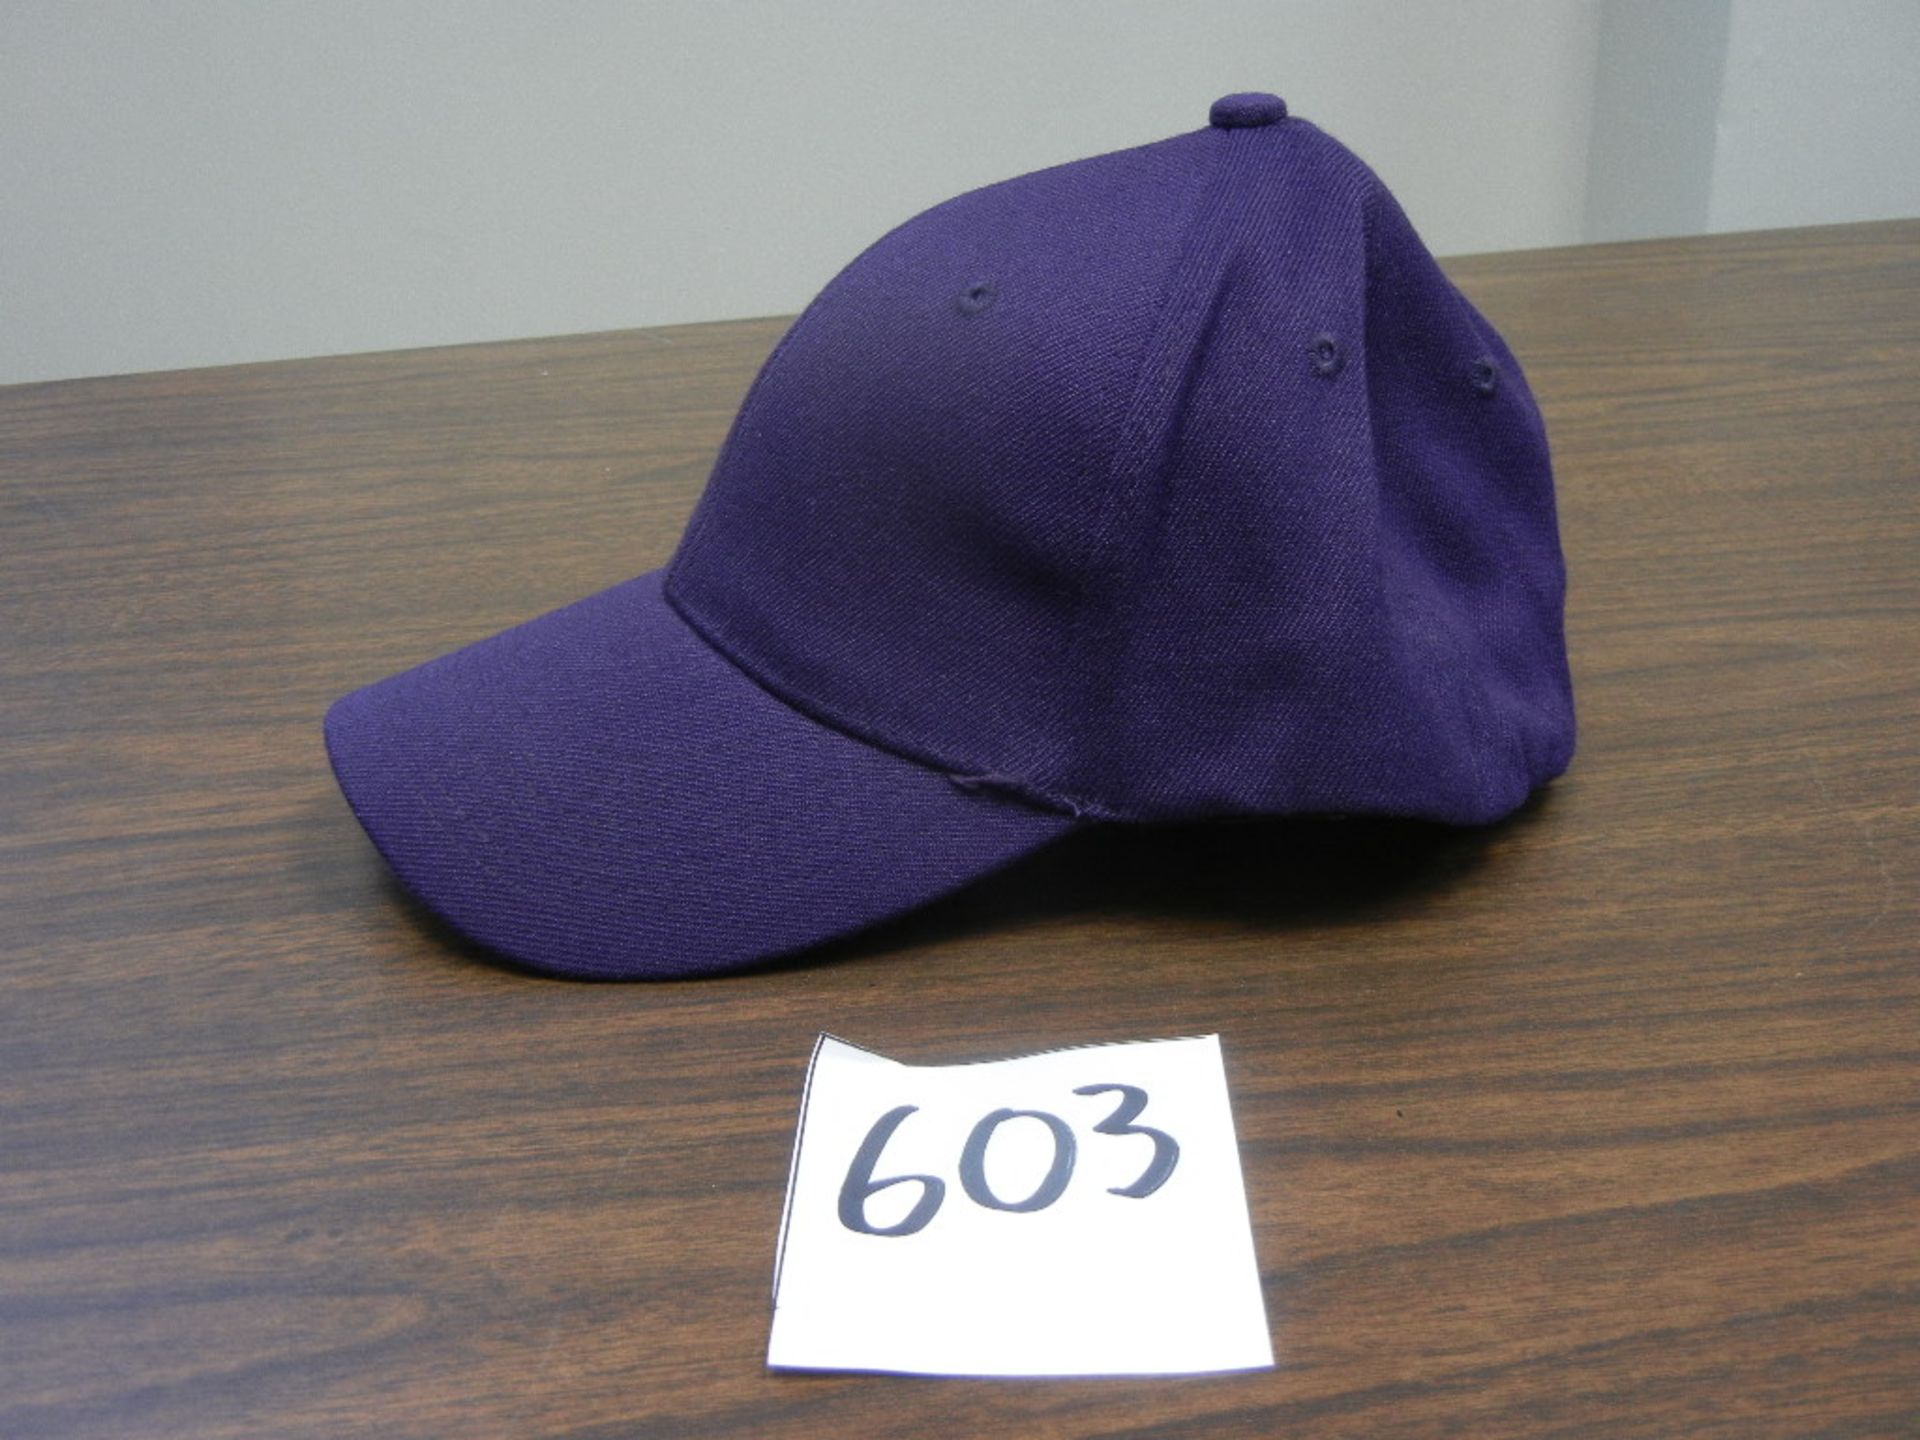 Wool Blend Stretch Fit cap, 6 Panel, with US Patent 24 hats/case, 3cs s/m, 3cs m/l, 3cs l/xl Purple